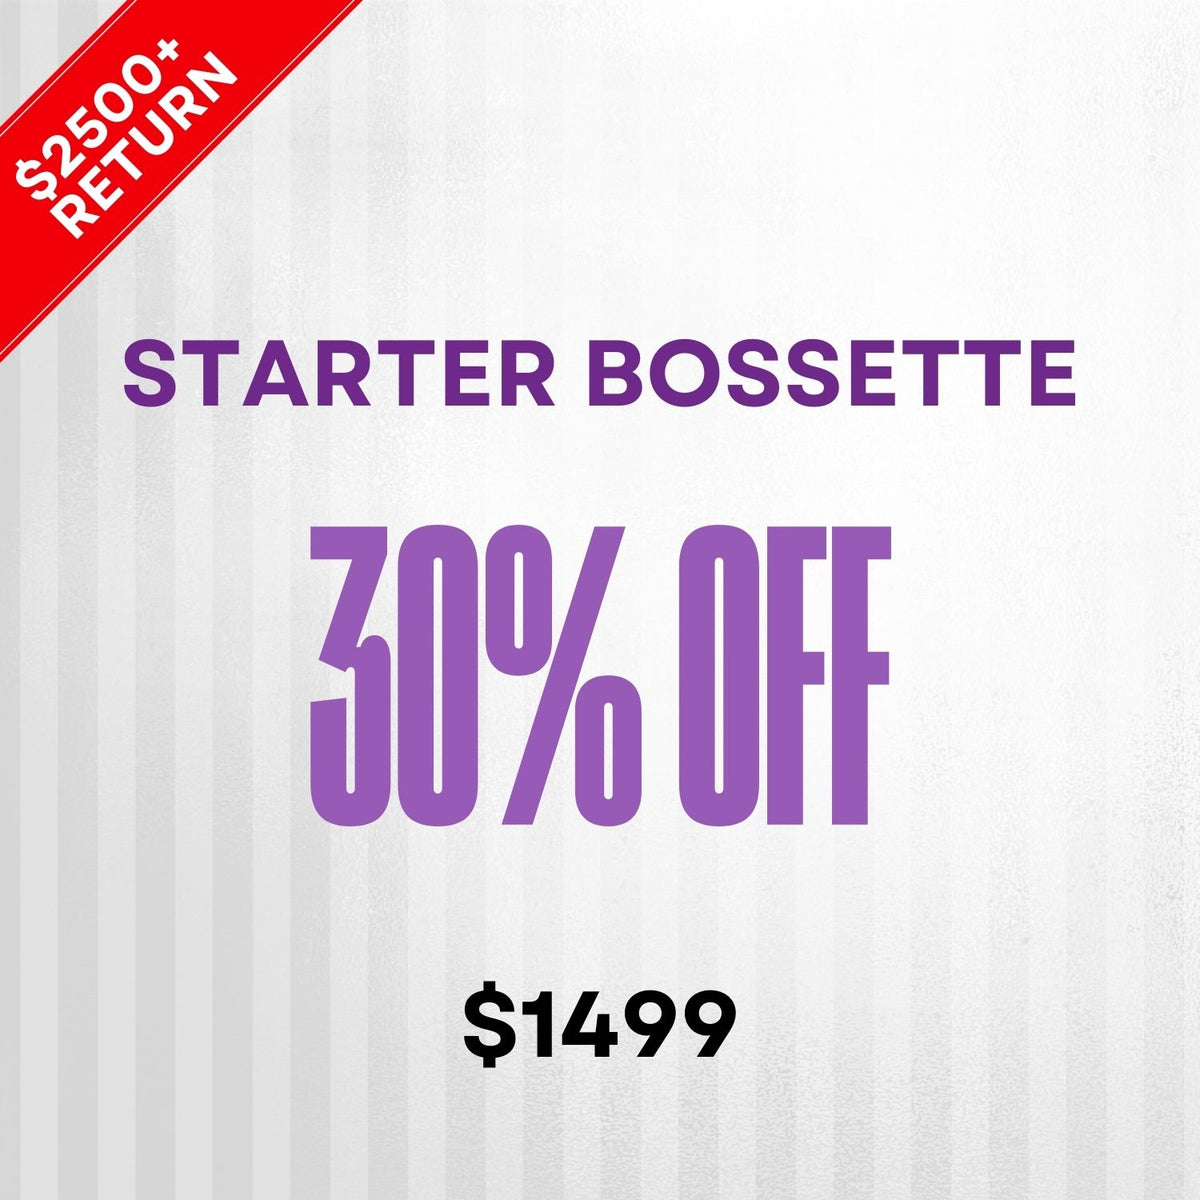 Starter  Bossette- 30% off